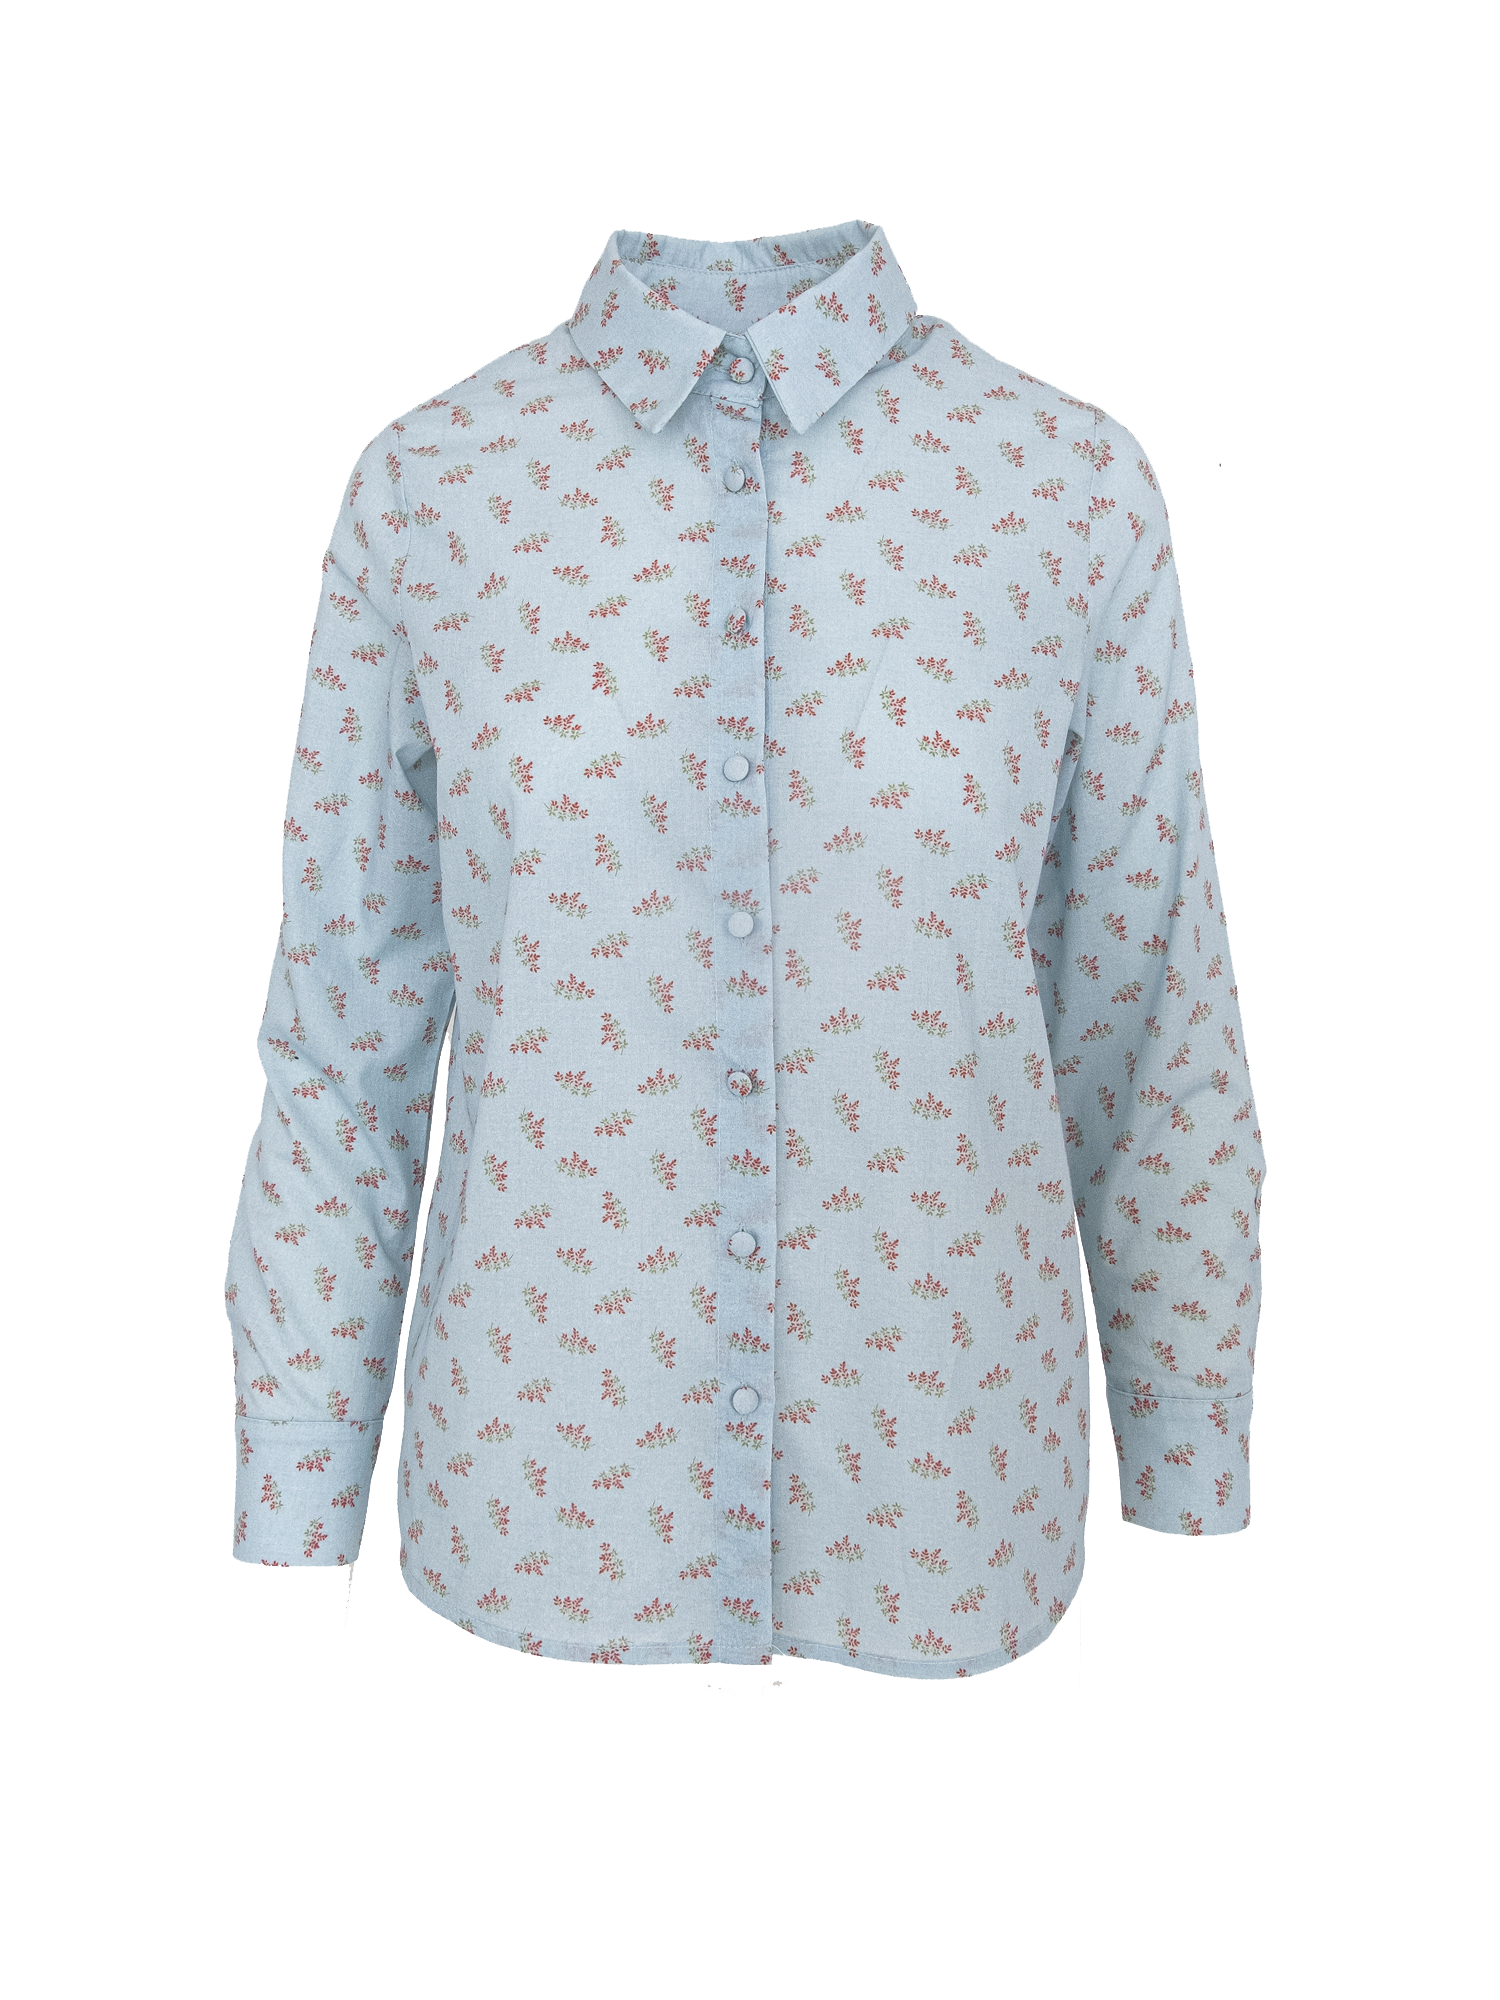 PEONIA - blouse in cotton Stourhead print